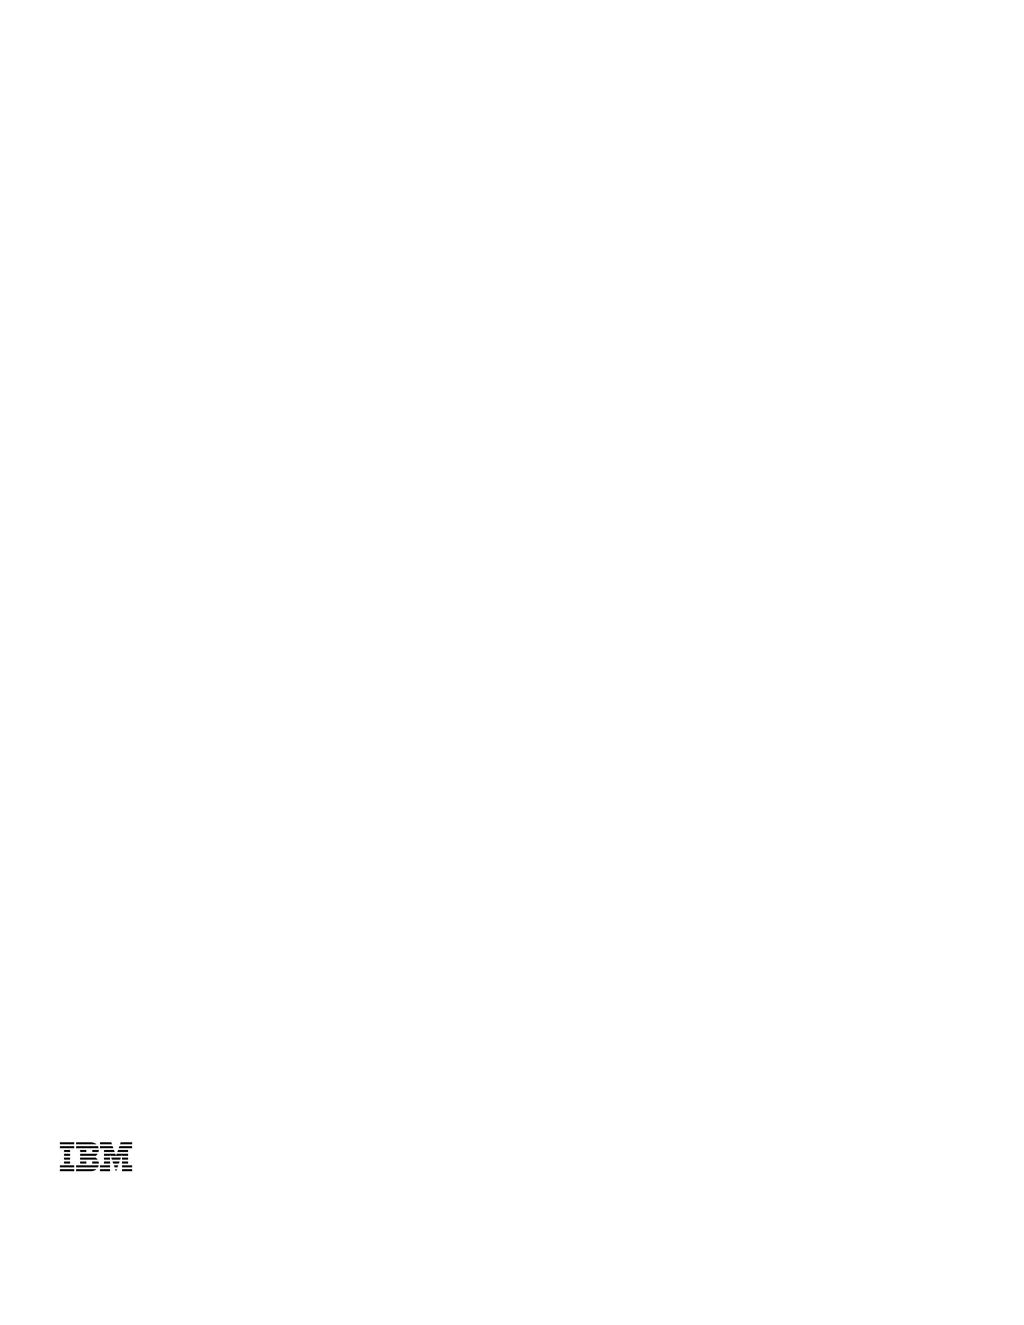 IBM Forms V8.